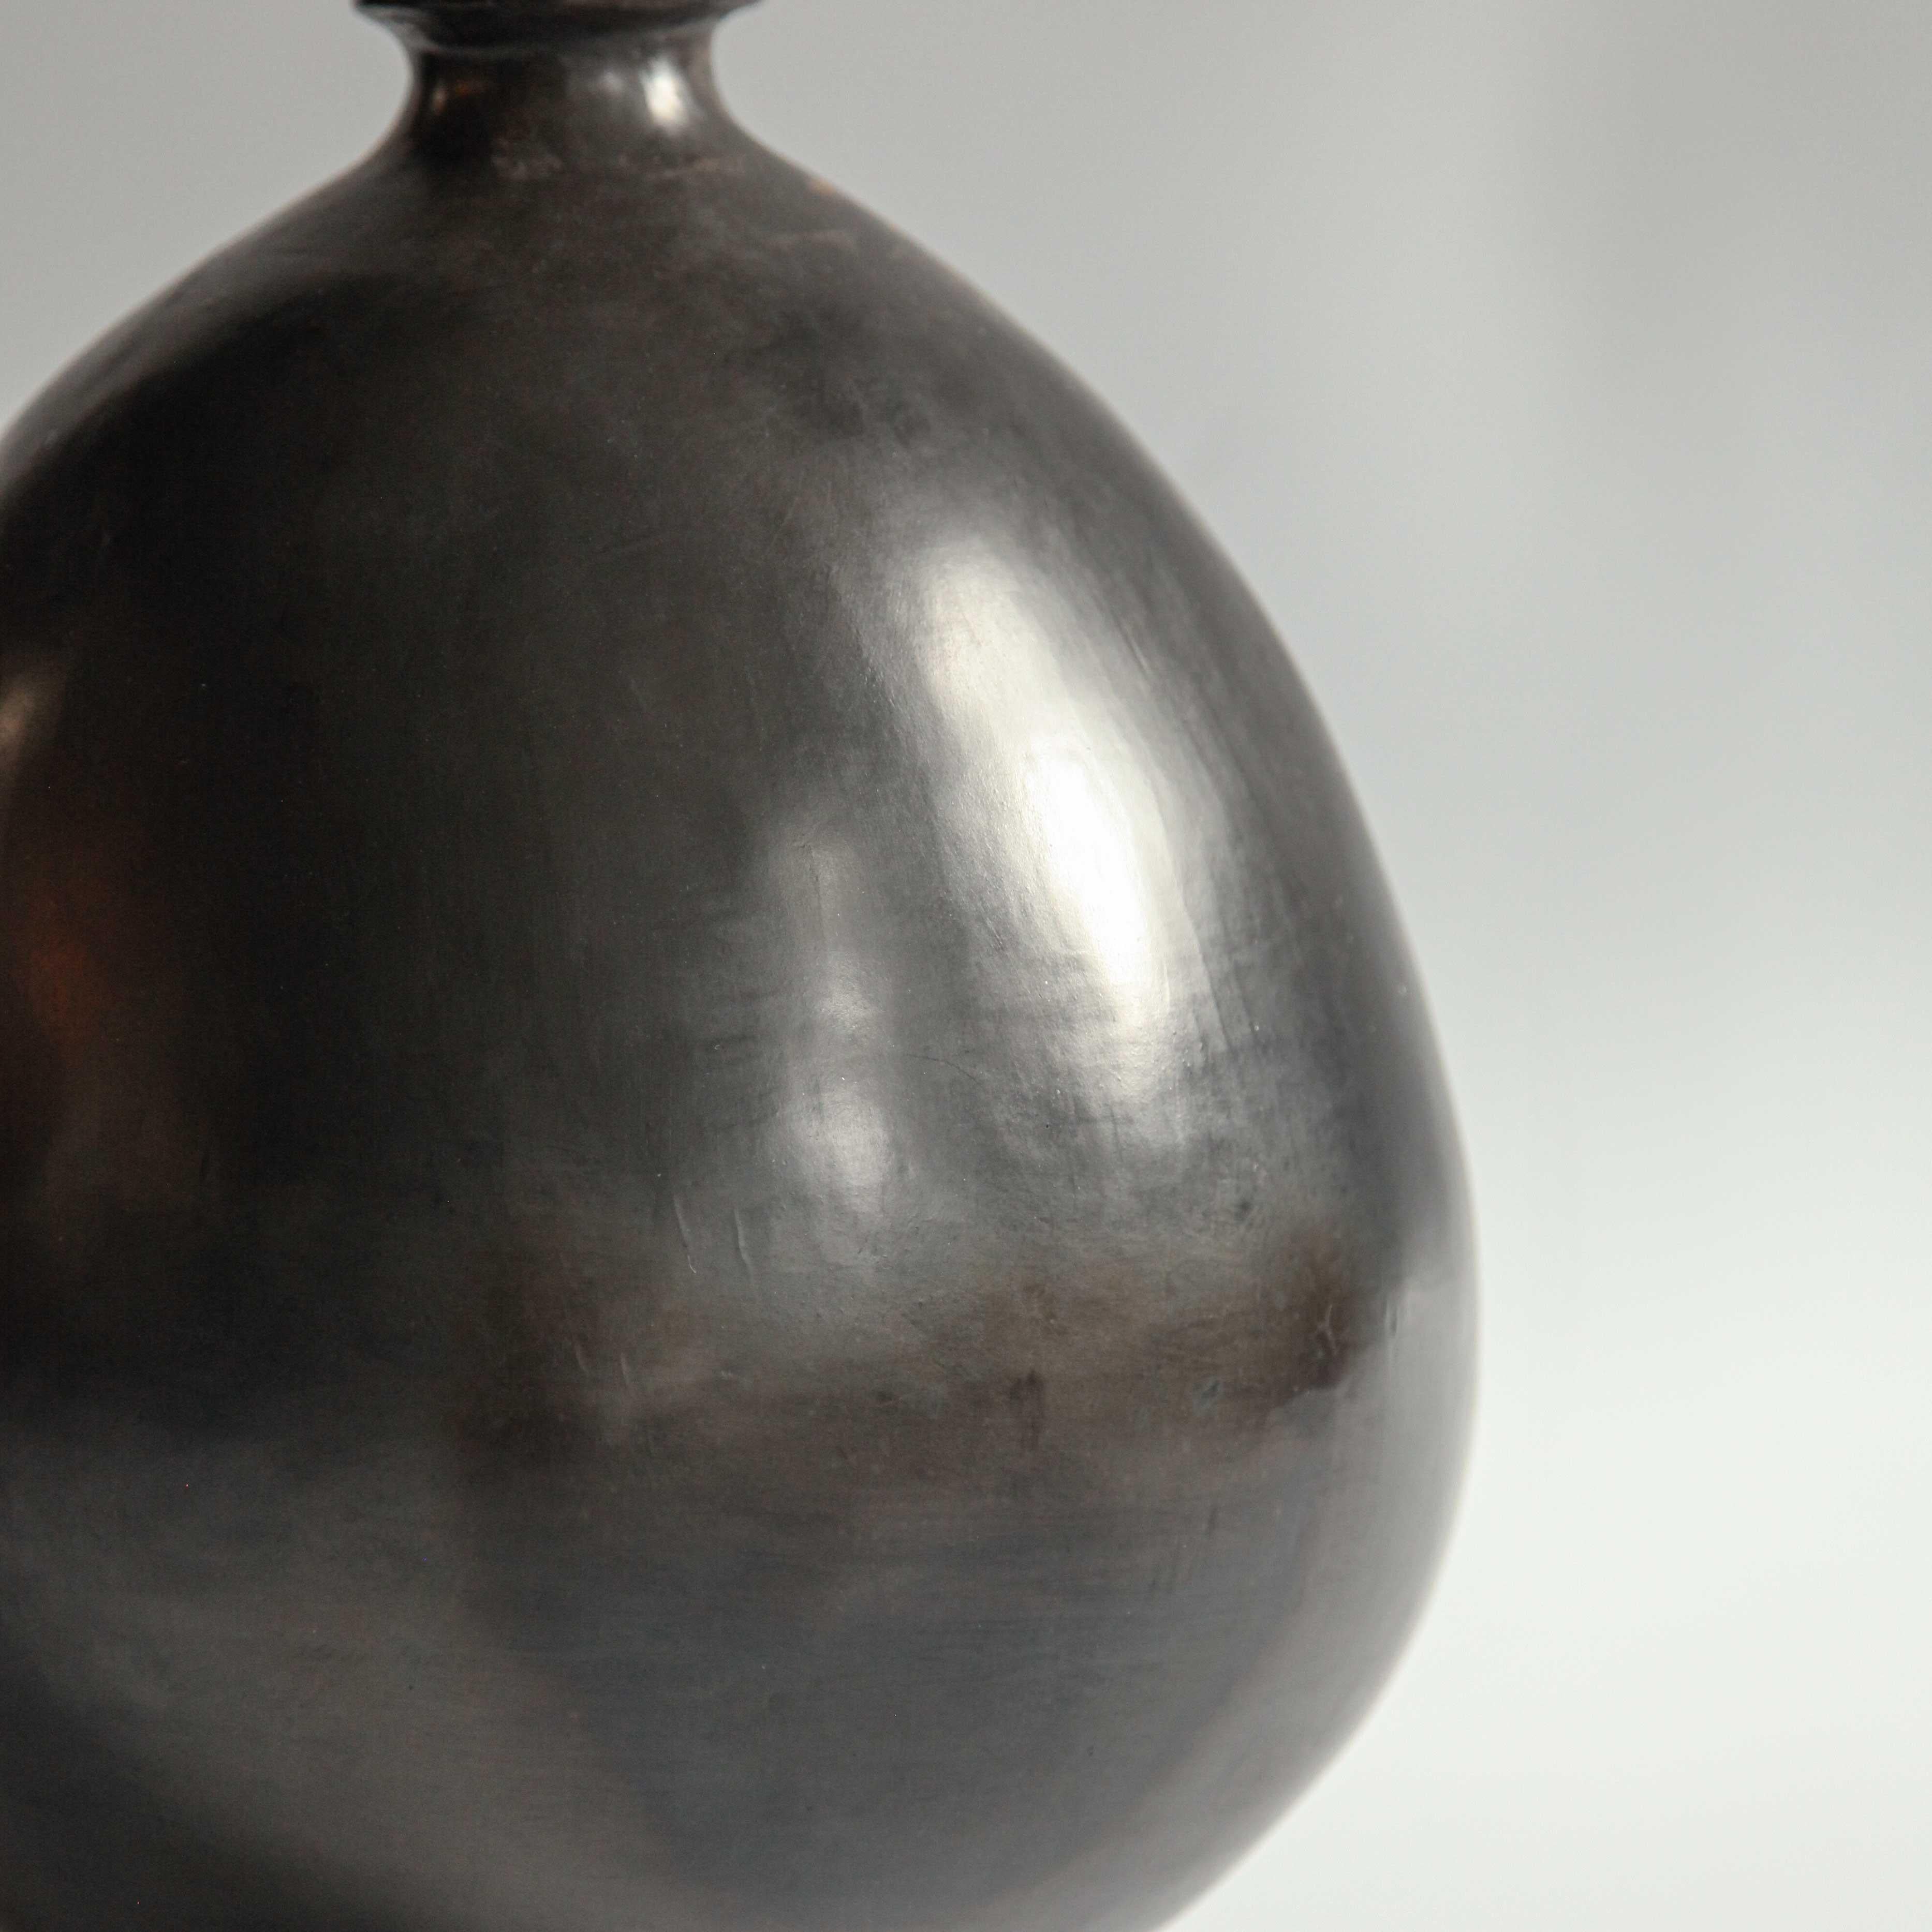 L'argile - connue sous le nom de barro negro - à partir de laquelle ces lampes de table sont fabriquées est exclusive aux montagnes de la Sierra Madre dans l'État mexicain d'Oaxaca. La légende locale veut que l'argile soit bénite.

La couleur